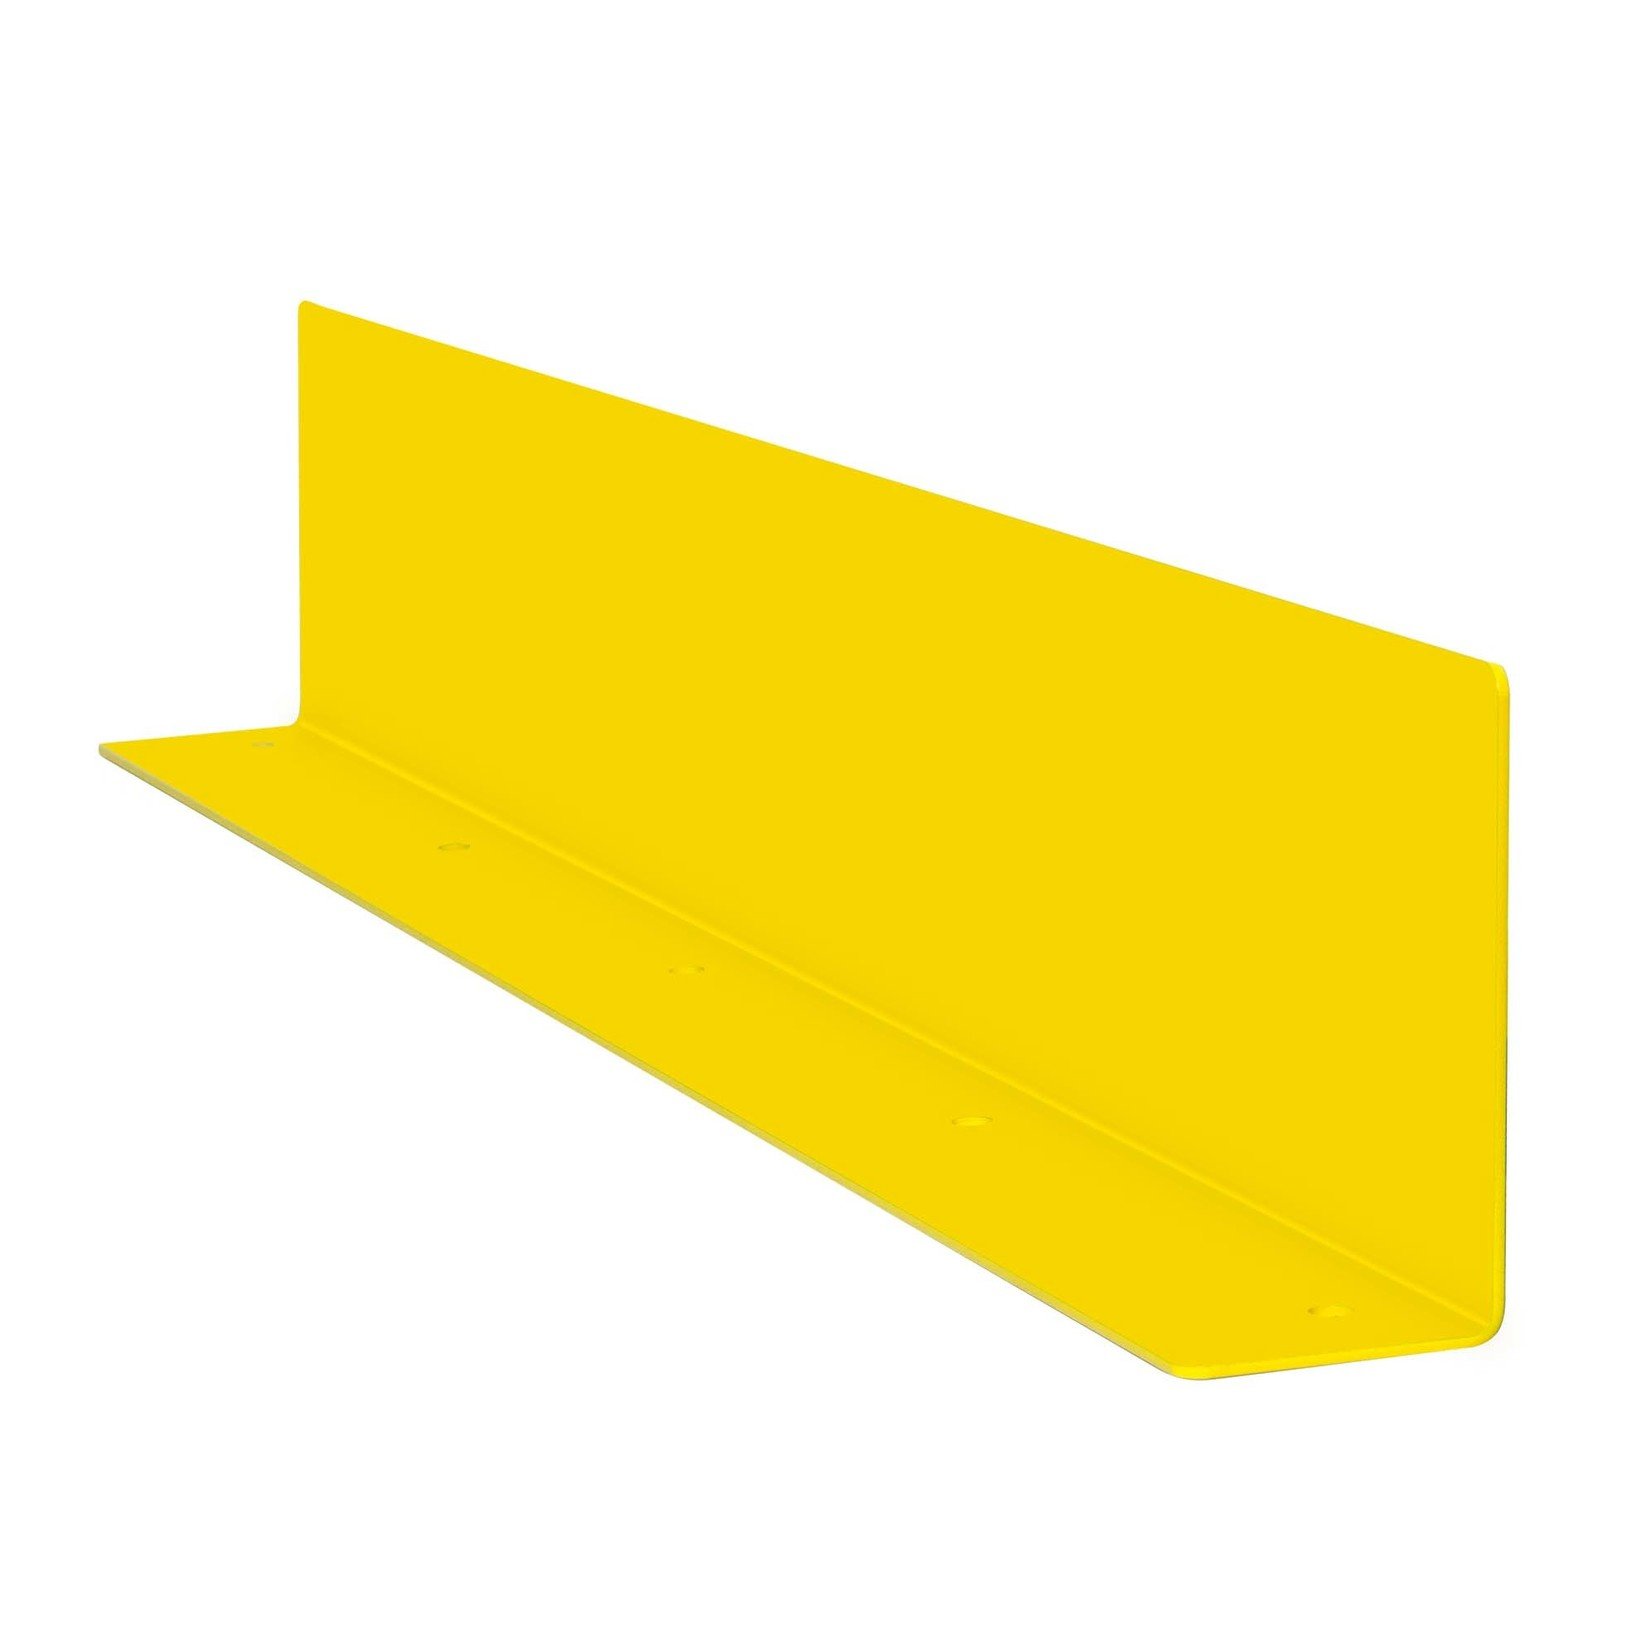 Doorrijbeveiliging voor magazijn railing - 1080x200x100 mm - gecoat - geel